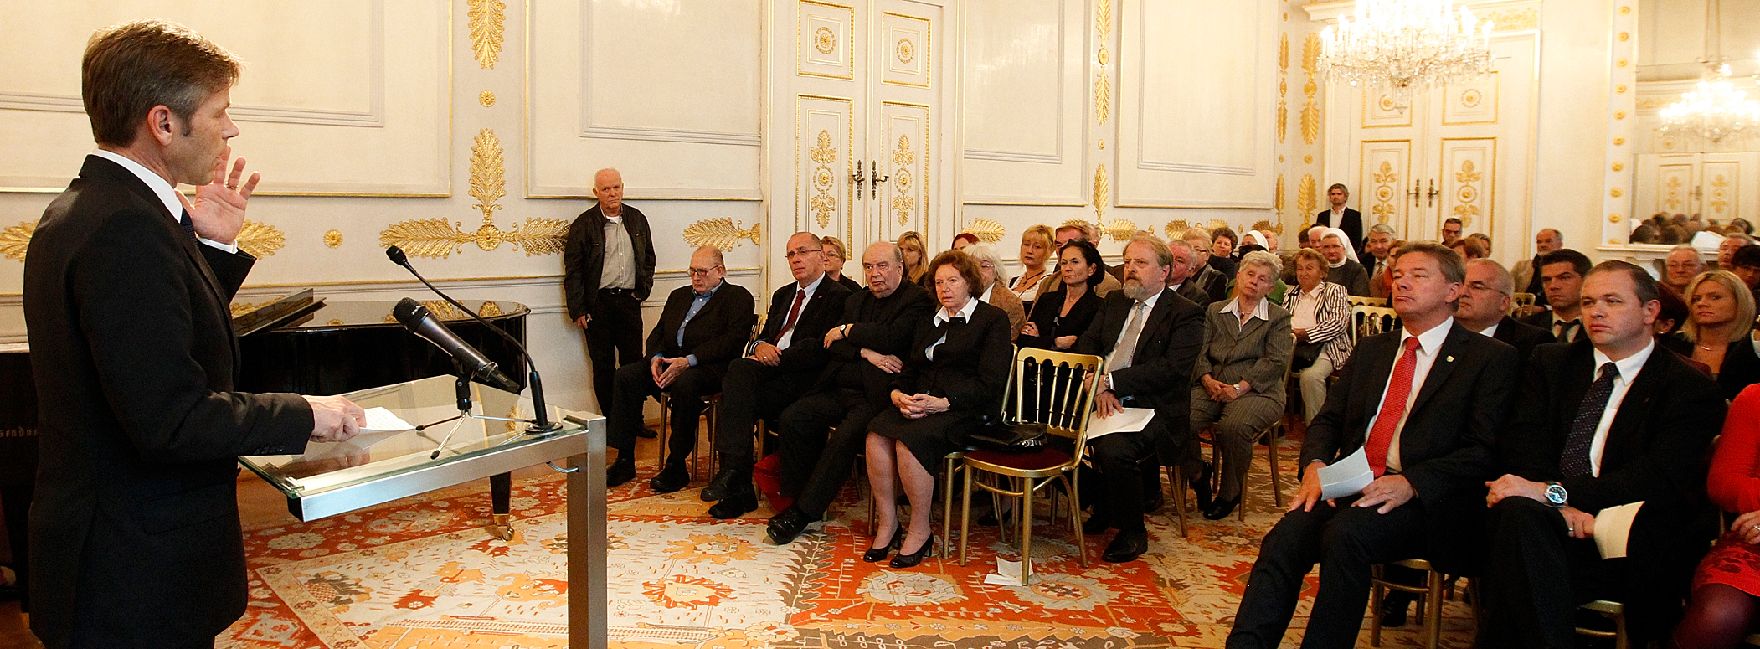 Am 12. Oktober 2011 überreichte Staatssekretär Josef Ostermayer der Widerstandskämpferin Käthe Sasso das Goldene Verdienstzeichen der Republik Österreich.